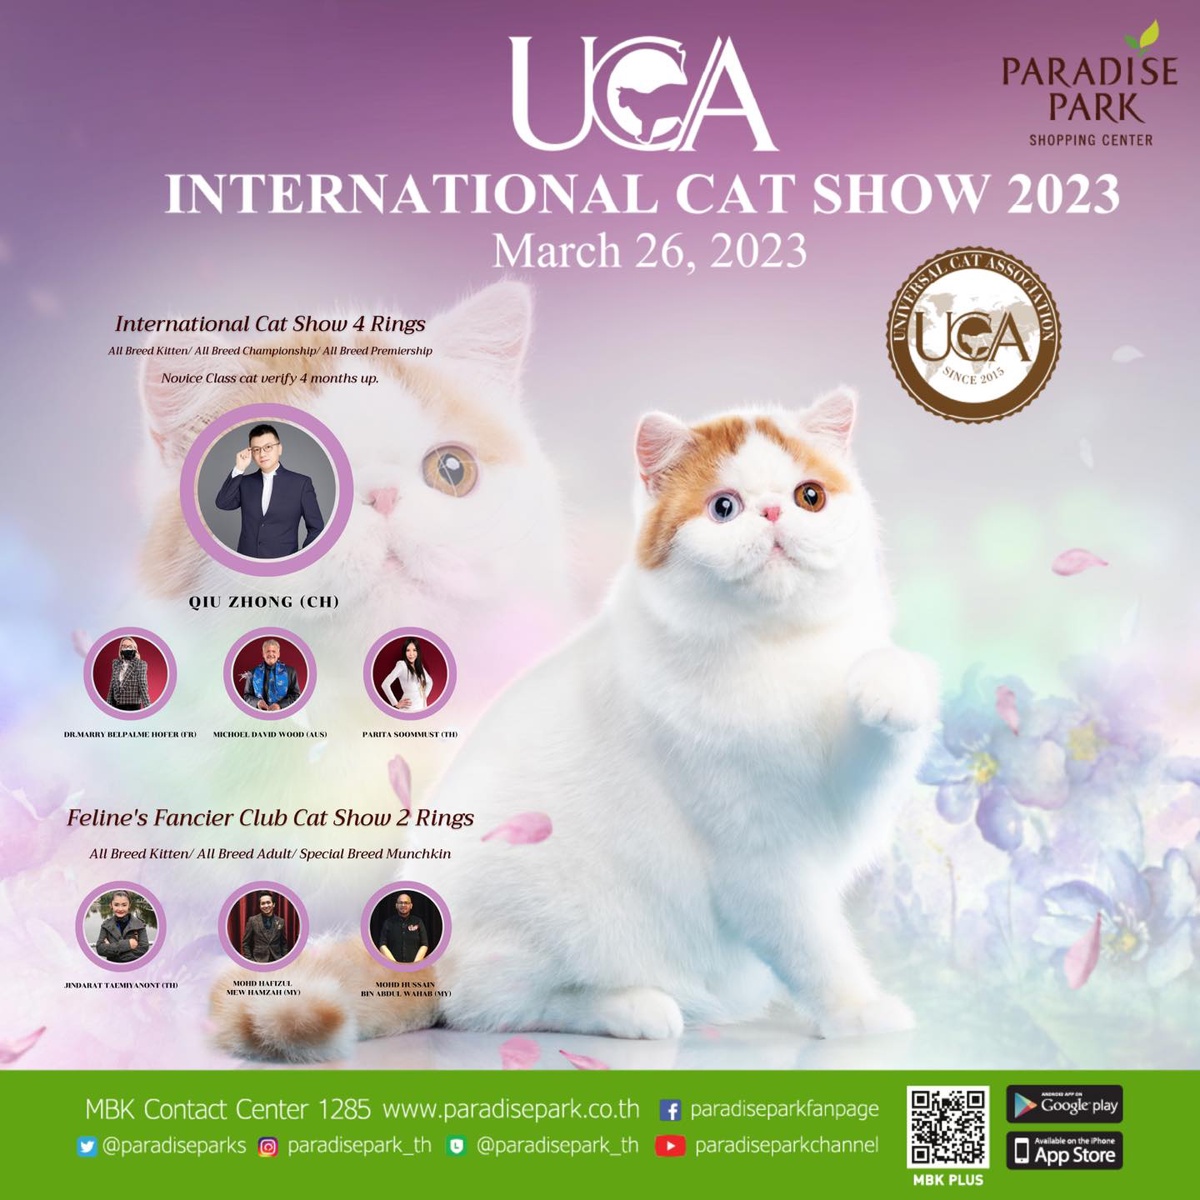 ทาสแมวเหมียวต้องมา! พาราไดซ์ พาร์ค ชวนมางานประกวดแมวสวยงาม UCA International Cat Show 2023